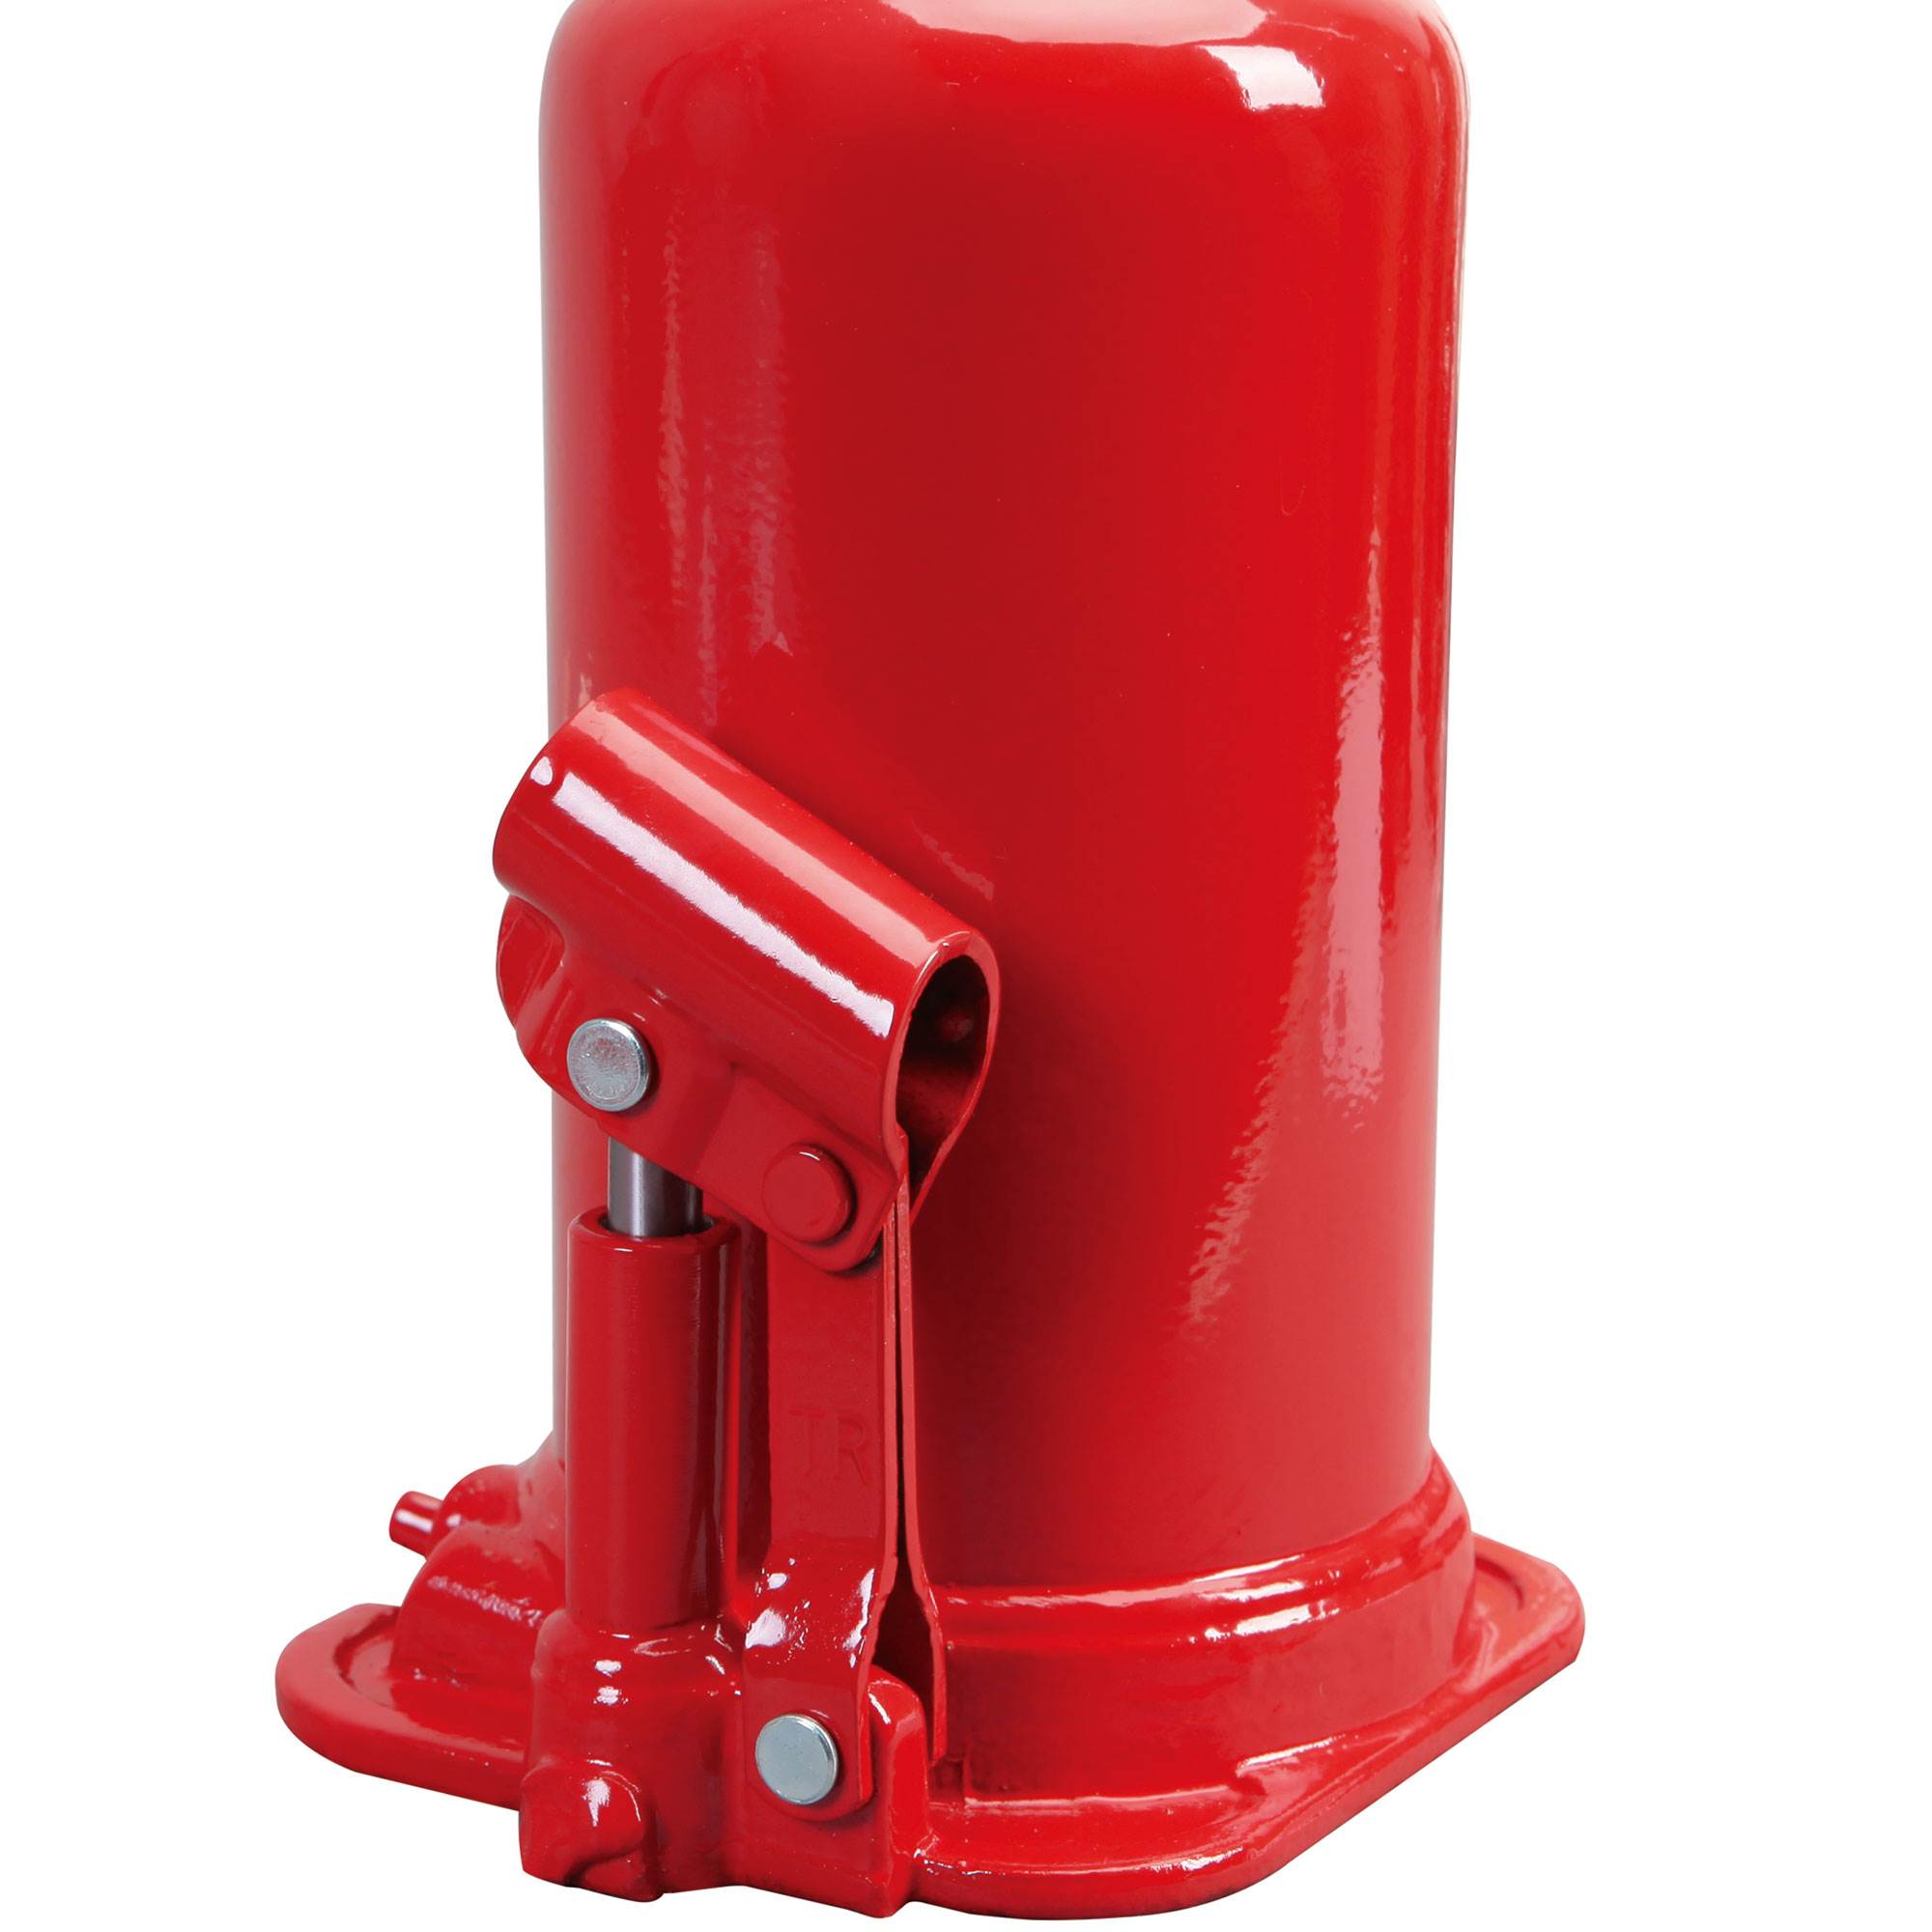 Torin Jacks Big Red 20 Ton Heavy Duty Hydraulic Welded Bottle Jack,T92003 - image 2 of 8